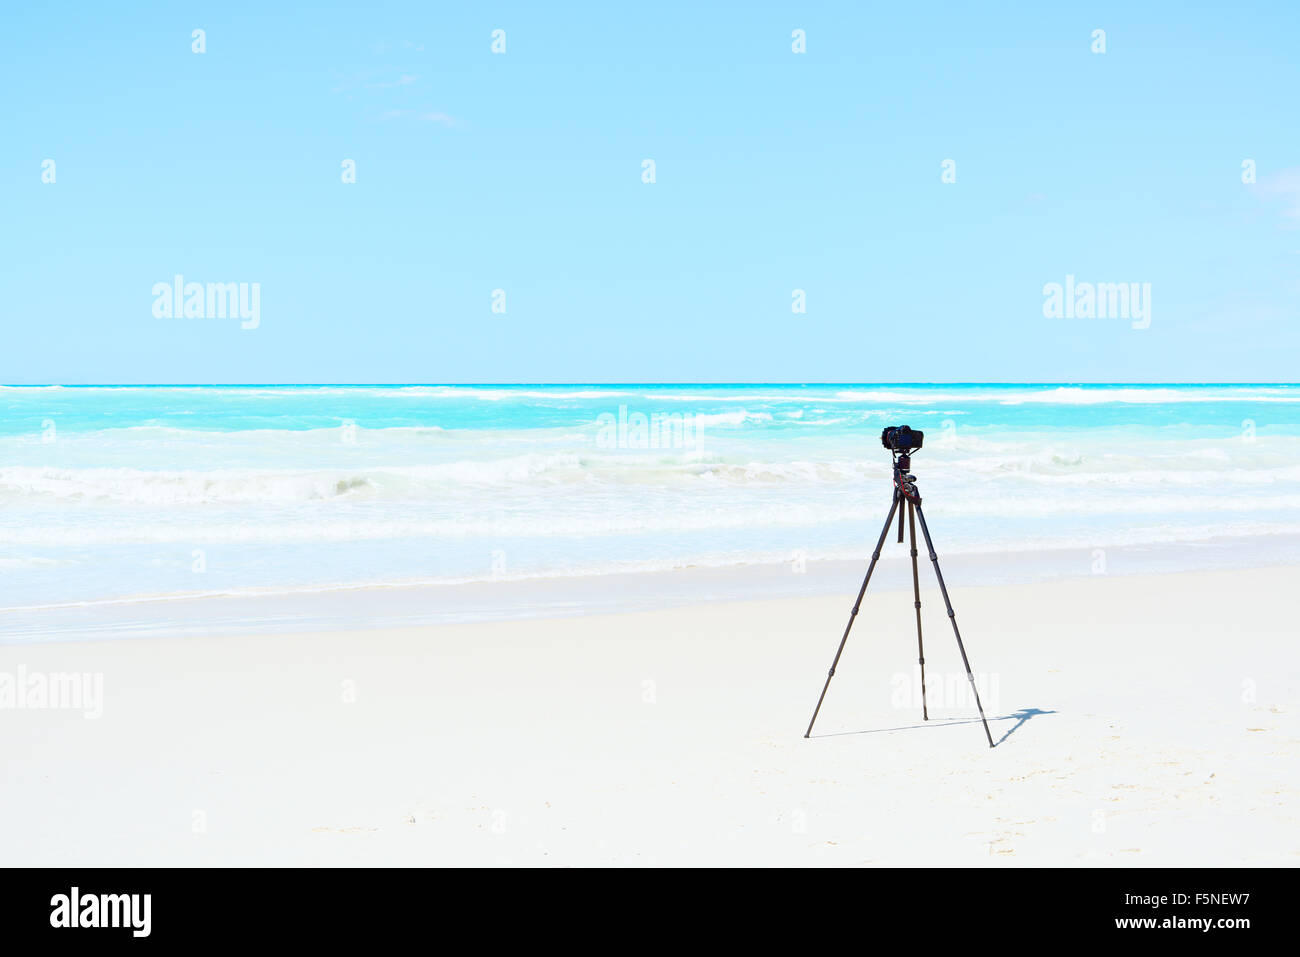 Fotocamera digitale, treppiede e filtri sulla spiaggia bianca pronto per la fotografia di paesaggi Foto Stock